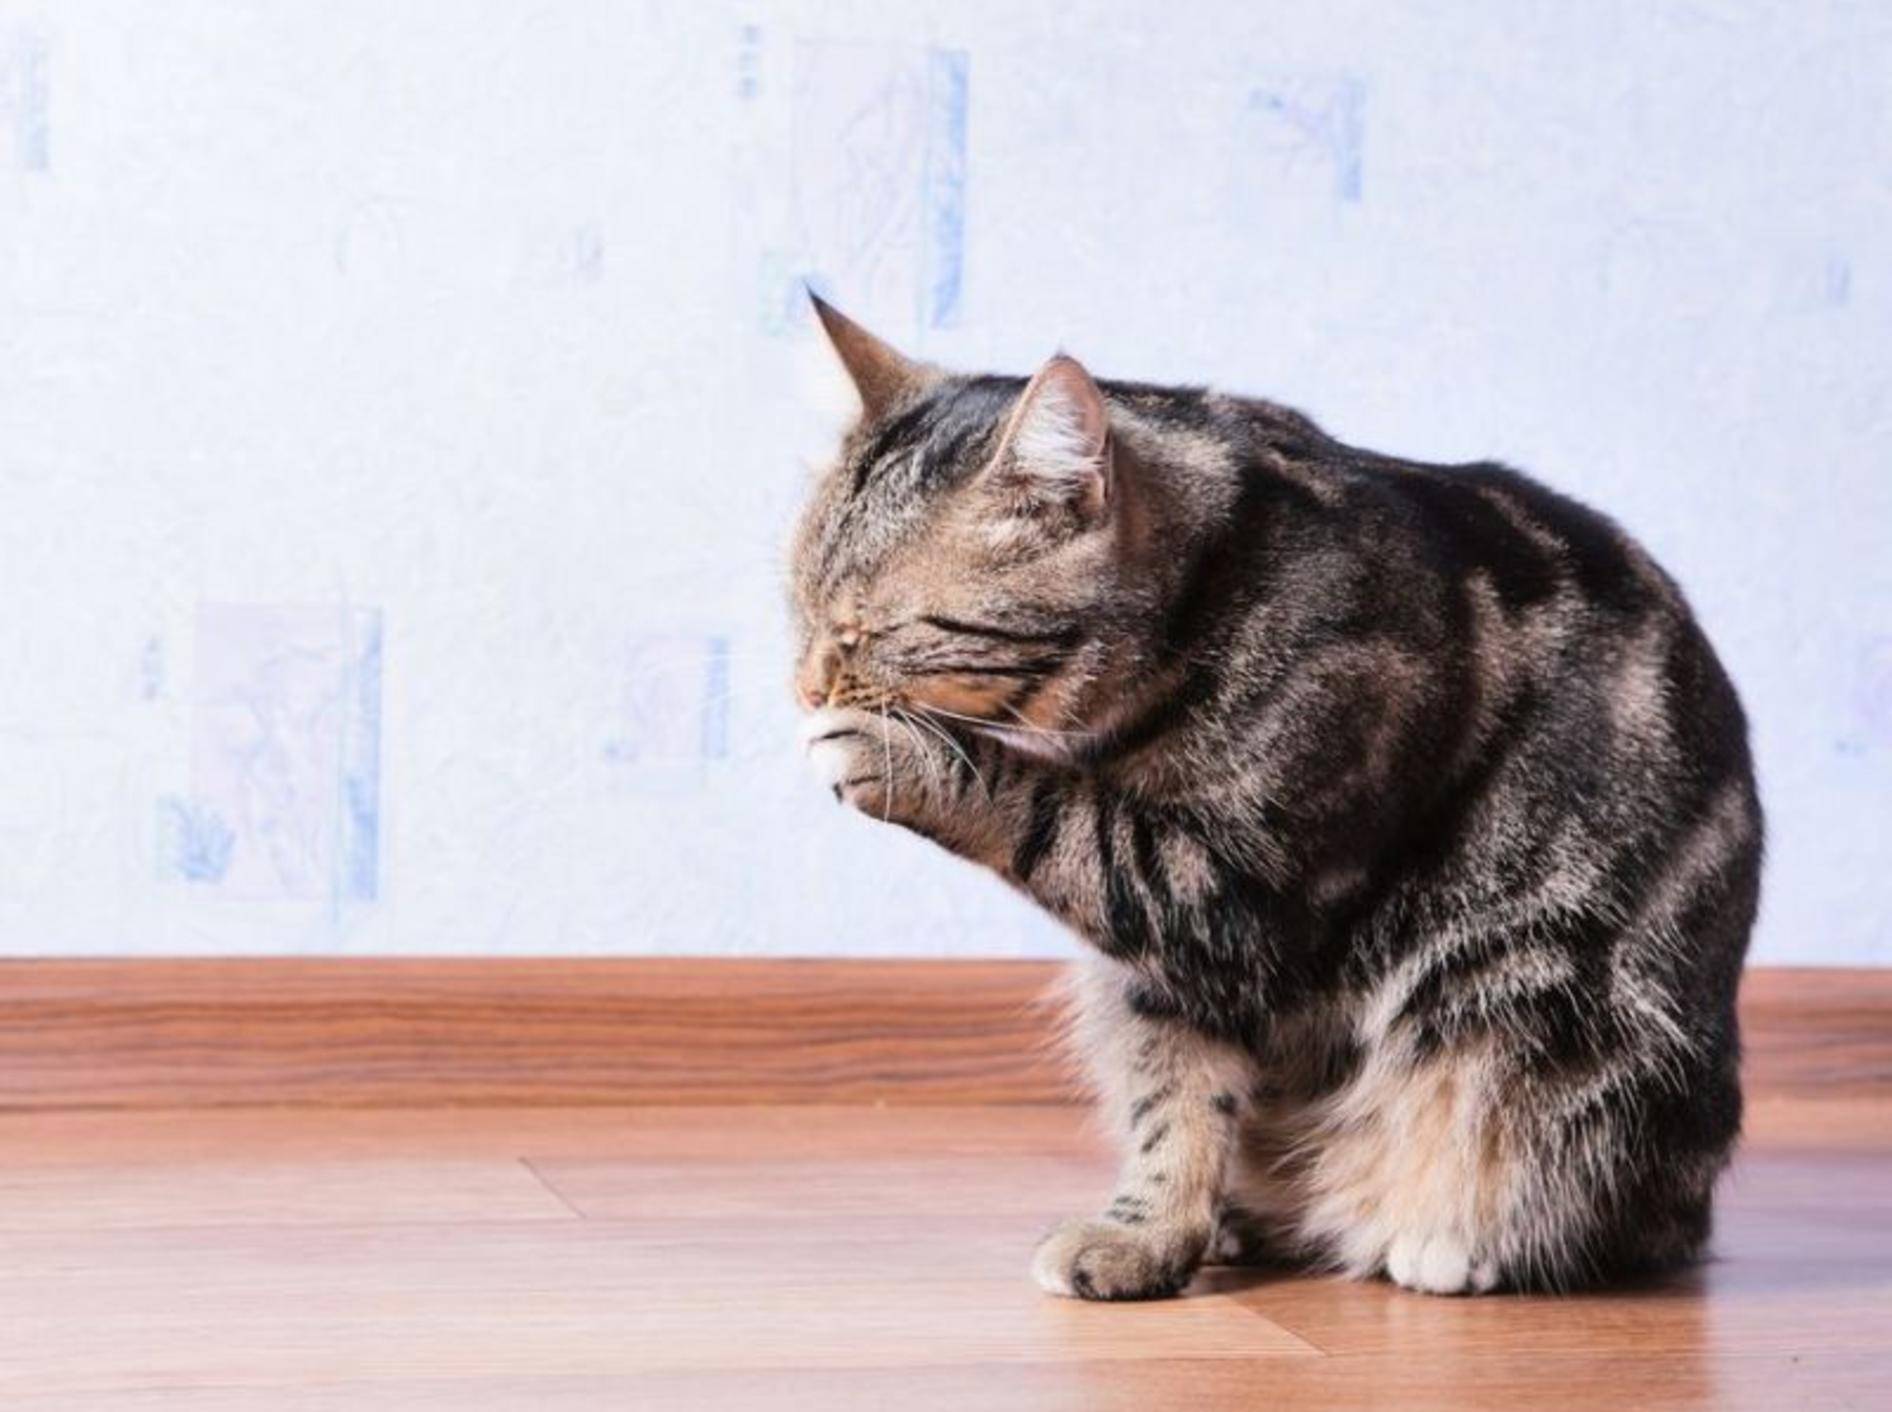 Bei unseren Stubentigern fällt die Katzenwäsche gründlicher aus als bei uns Menschen – Bild: Shutterstock / REDSTARSTUDIO